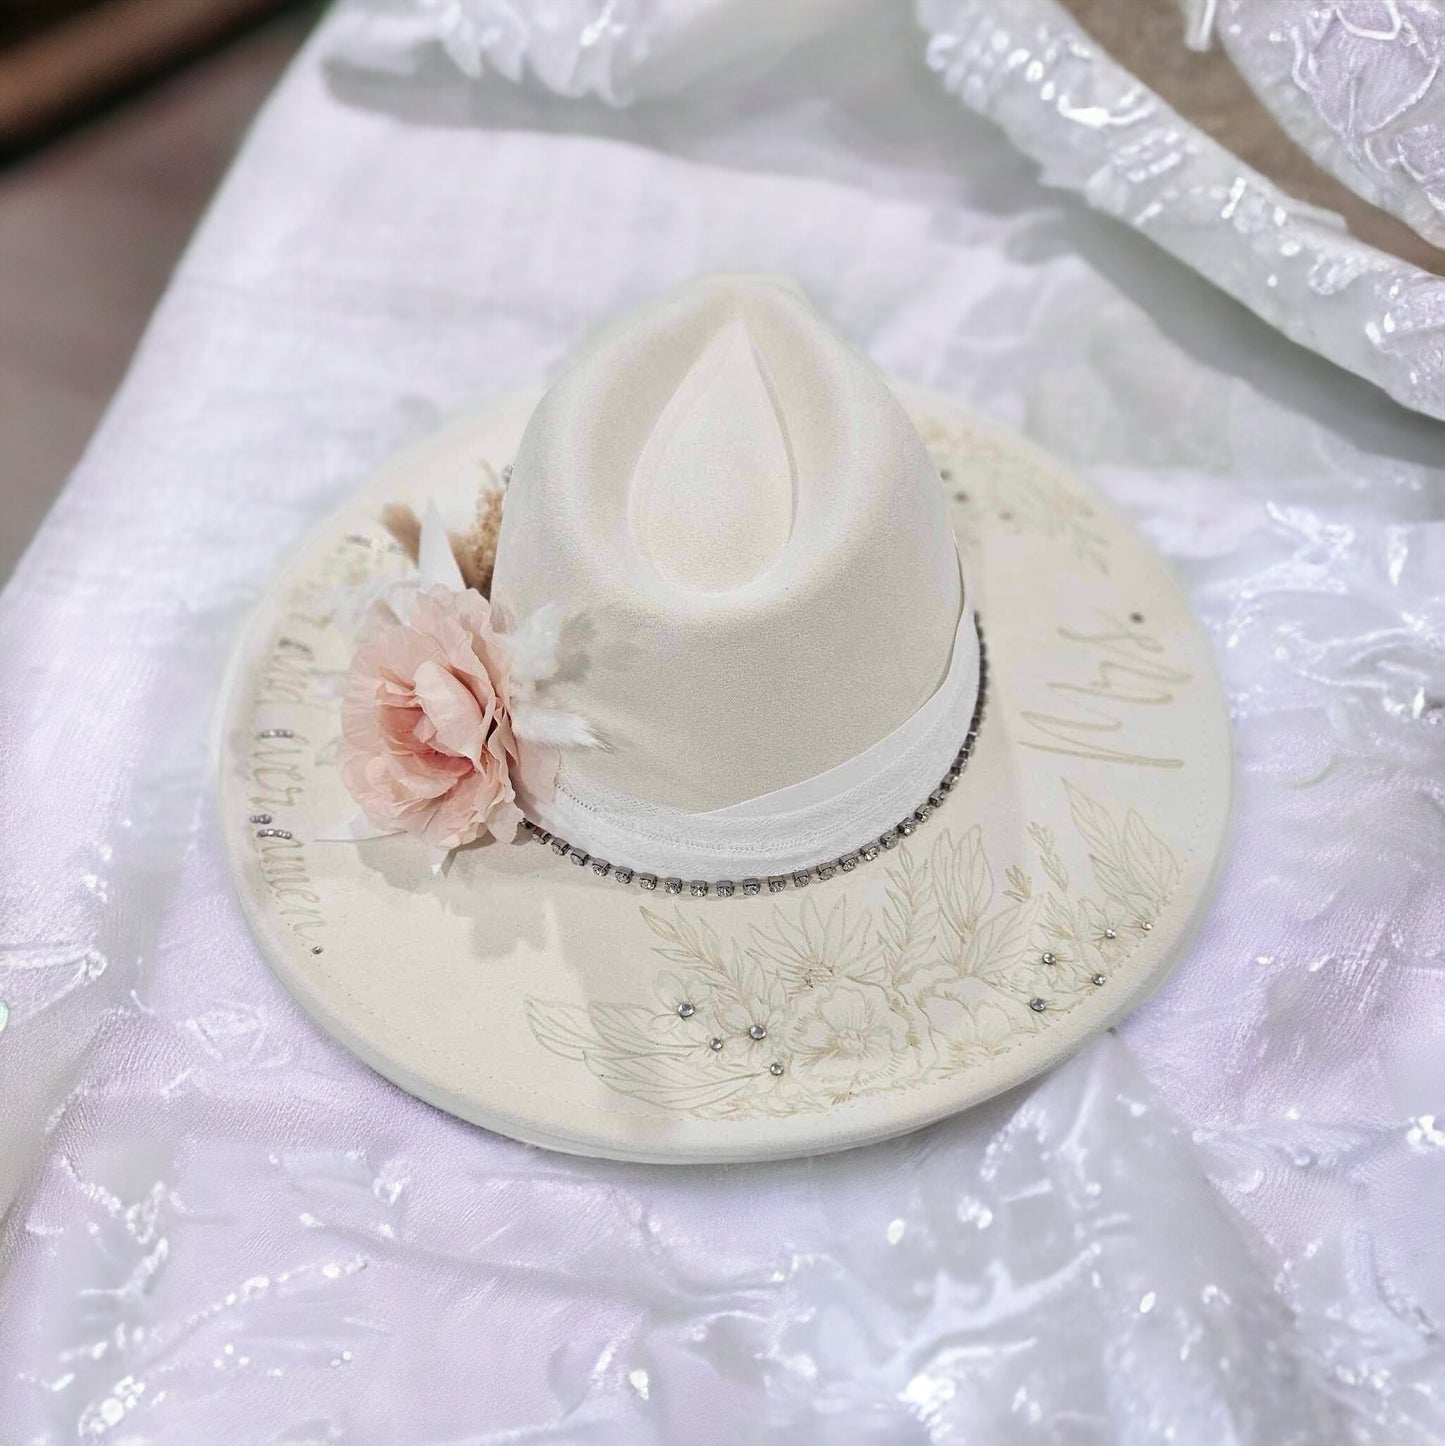 Forever- Bridal Themed Burned Wide Brim Hat